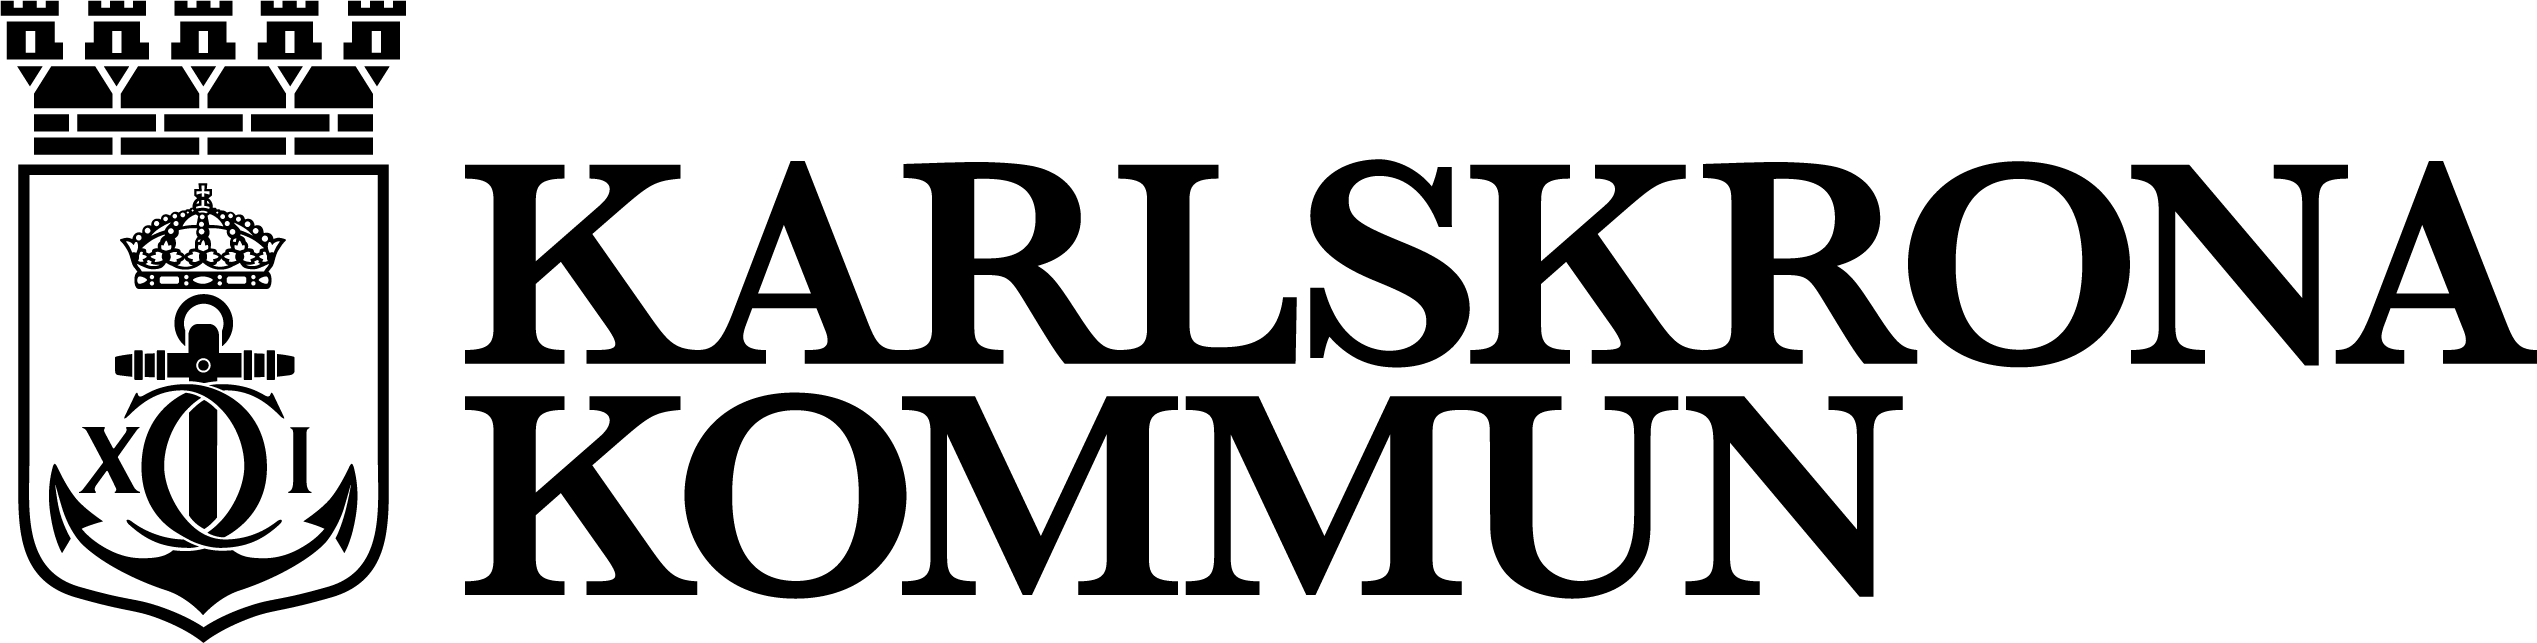 Karlskrona logotype